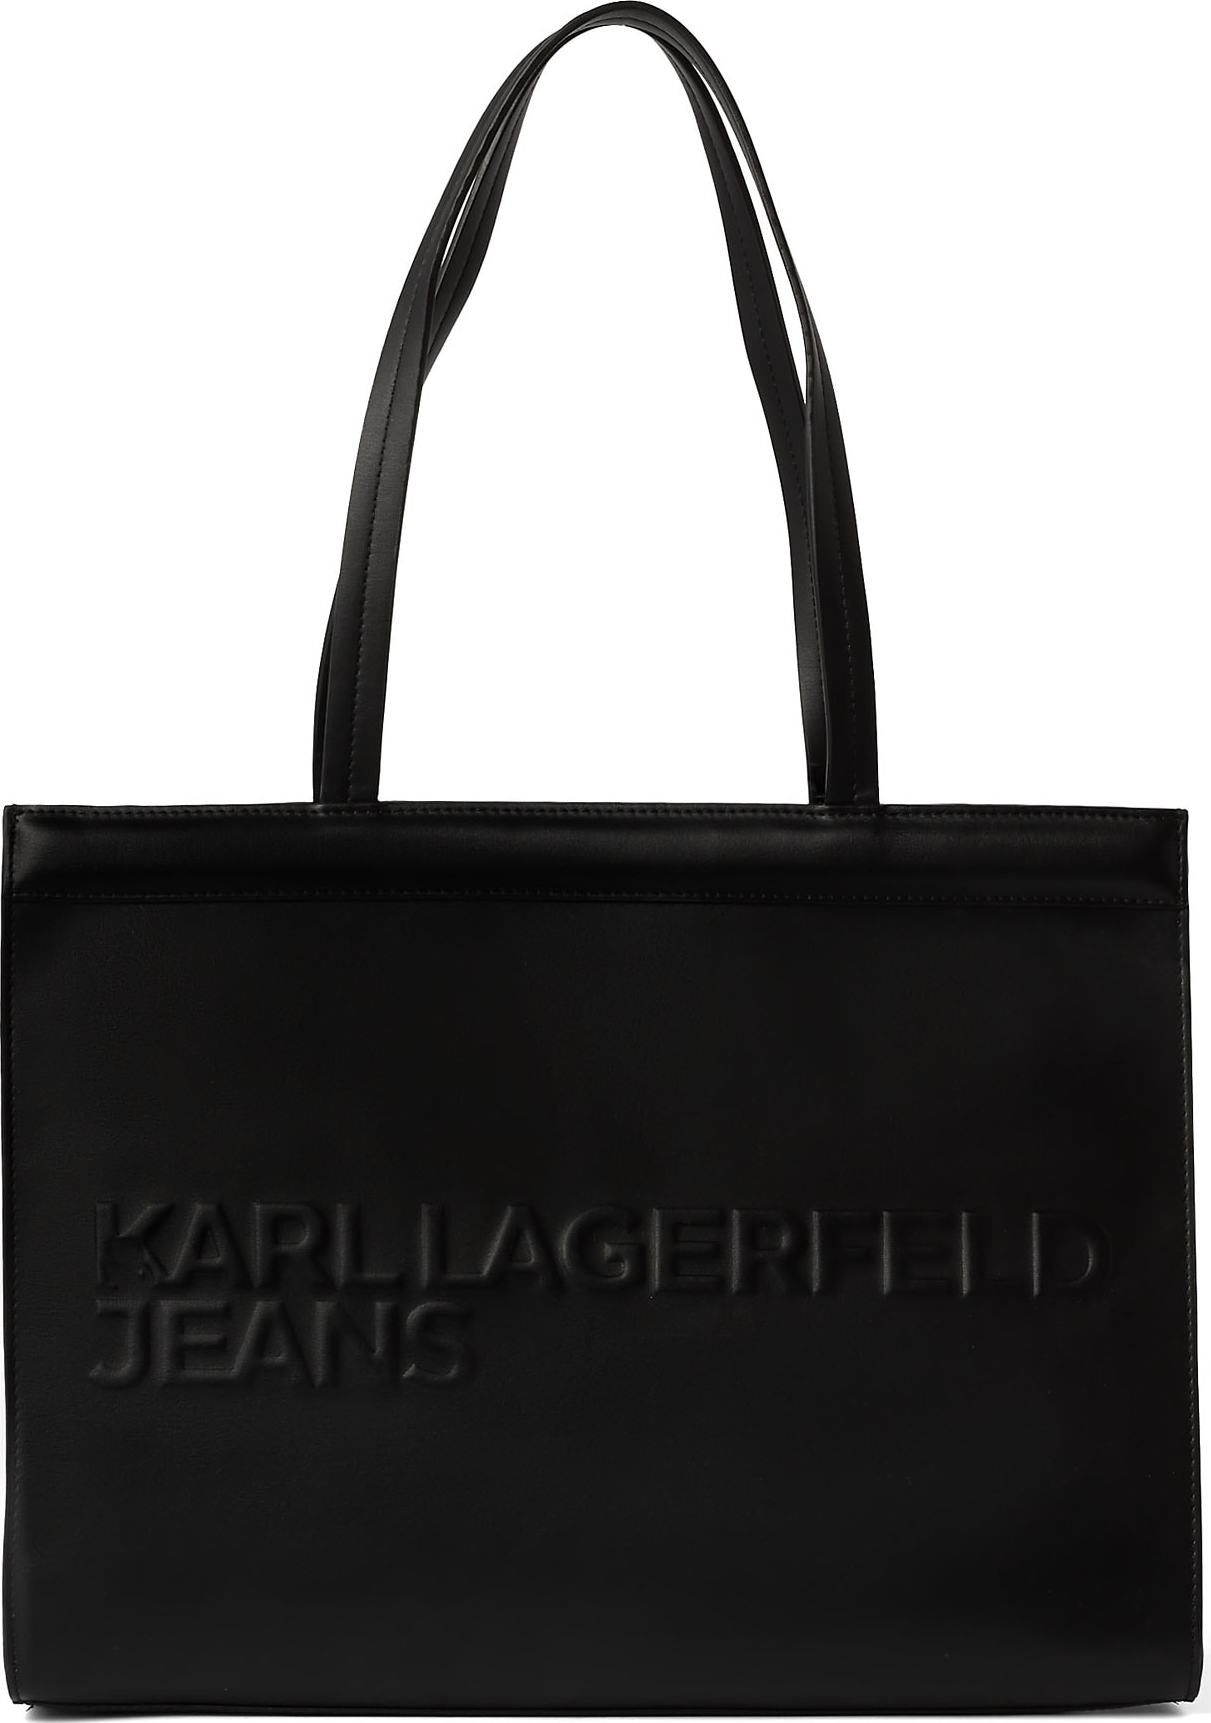 KARL LAGERFELD JEANS Nákupní taška černá